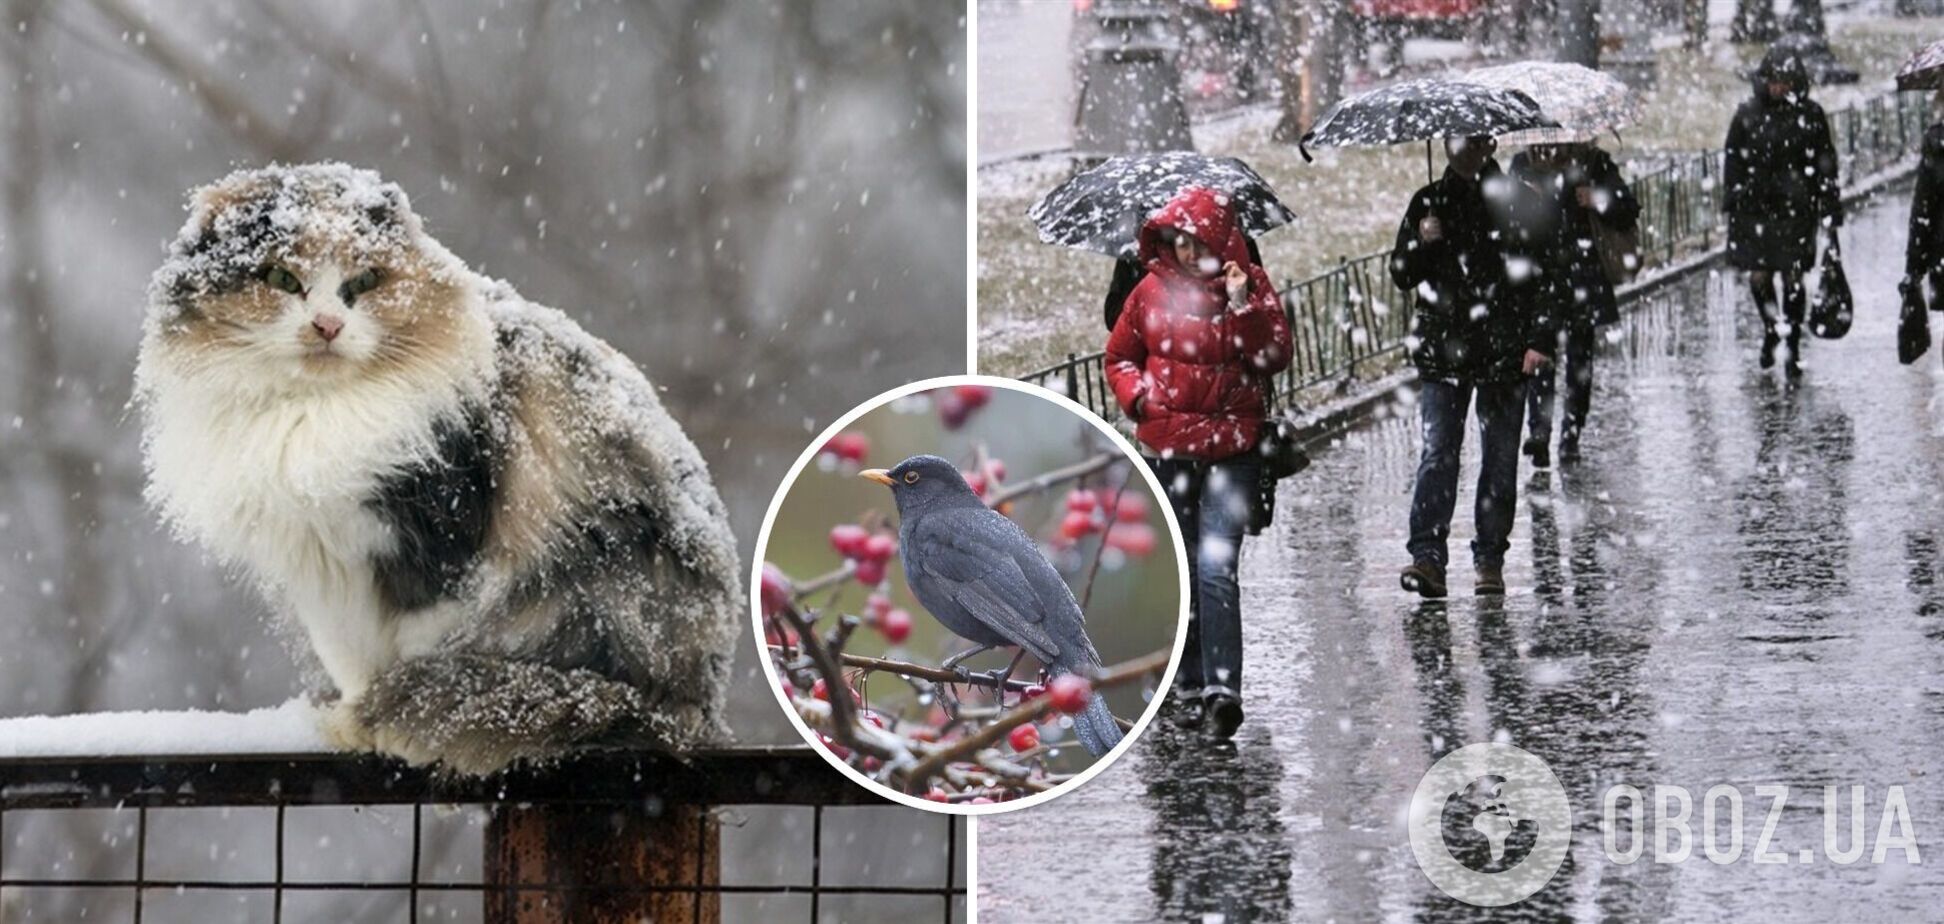 Дожди с мокрым снегом и метели: синоптики предупредили об ухудшении погоды в четверг. Карта